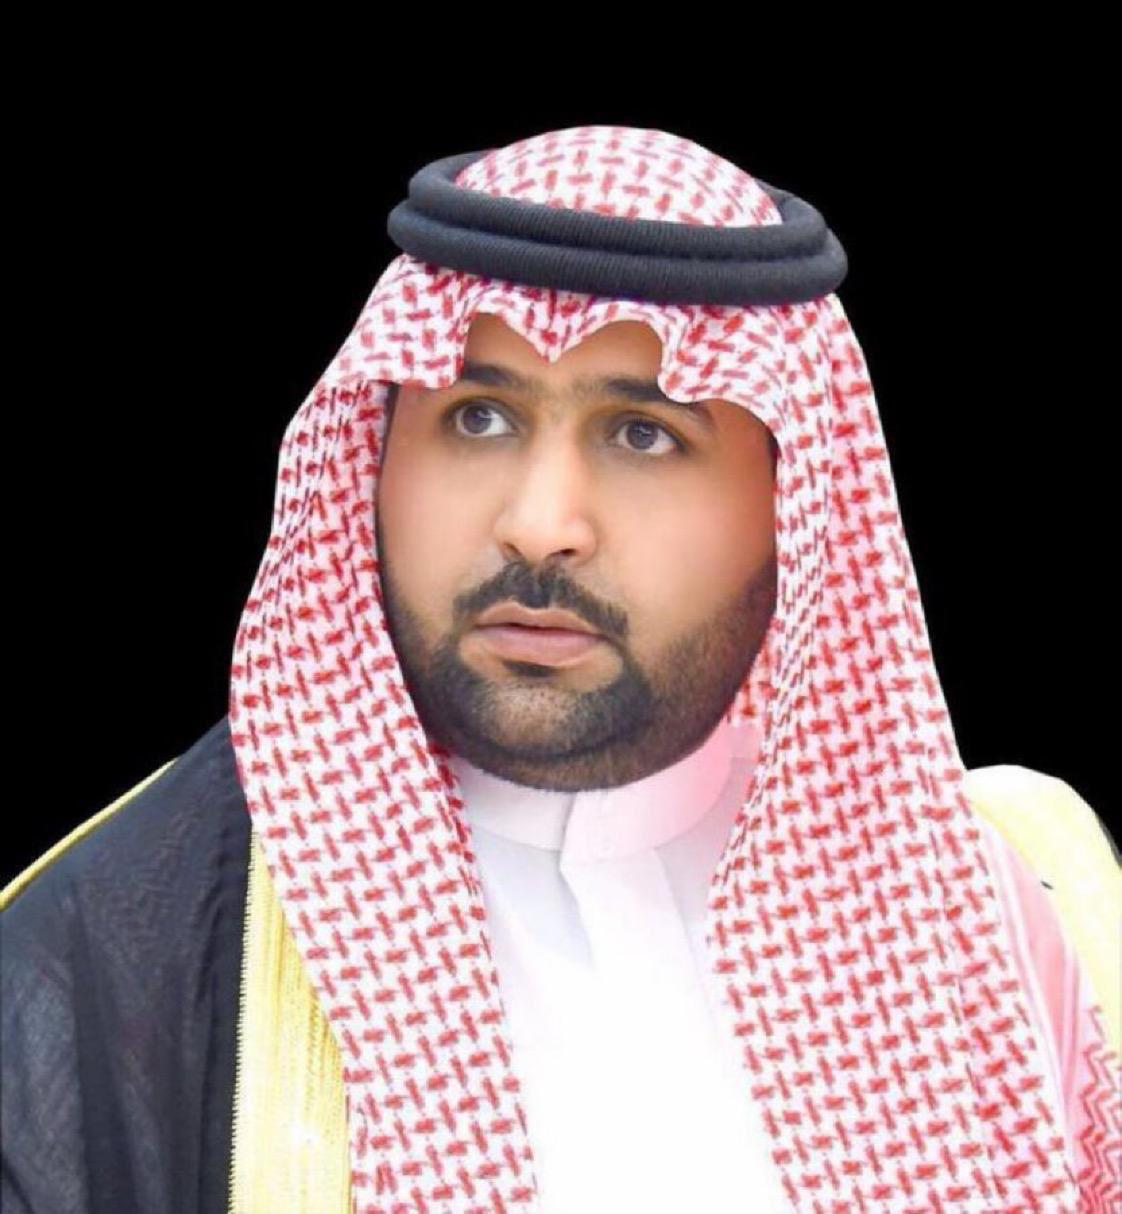 سمو الأمير محمد بن عبدالعزيز يعزي بوفاة شيخ آل وبران بمحافظة الريث